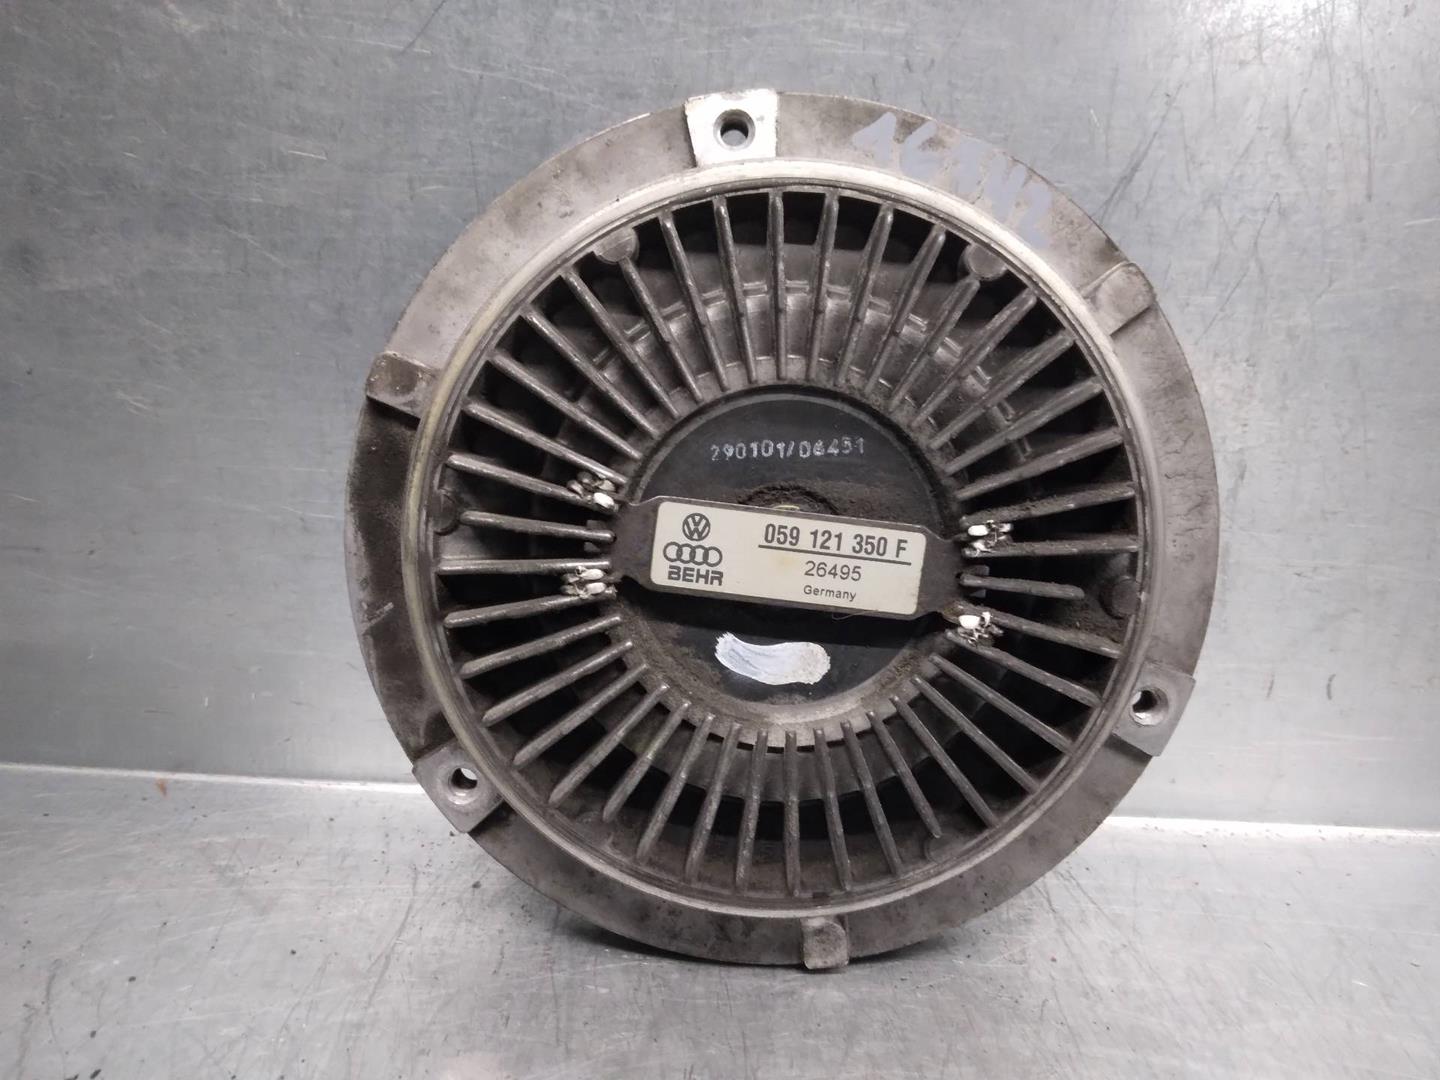 AUDI A6 C5/4B (1997-2004) Engine Cooling Fan Radiator 059121350F 19853926